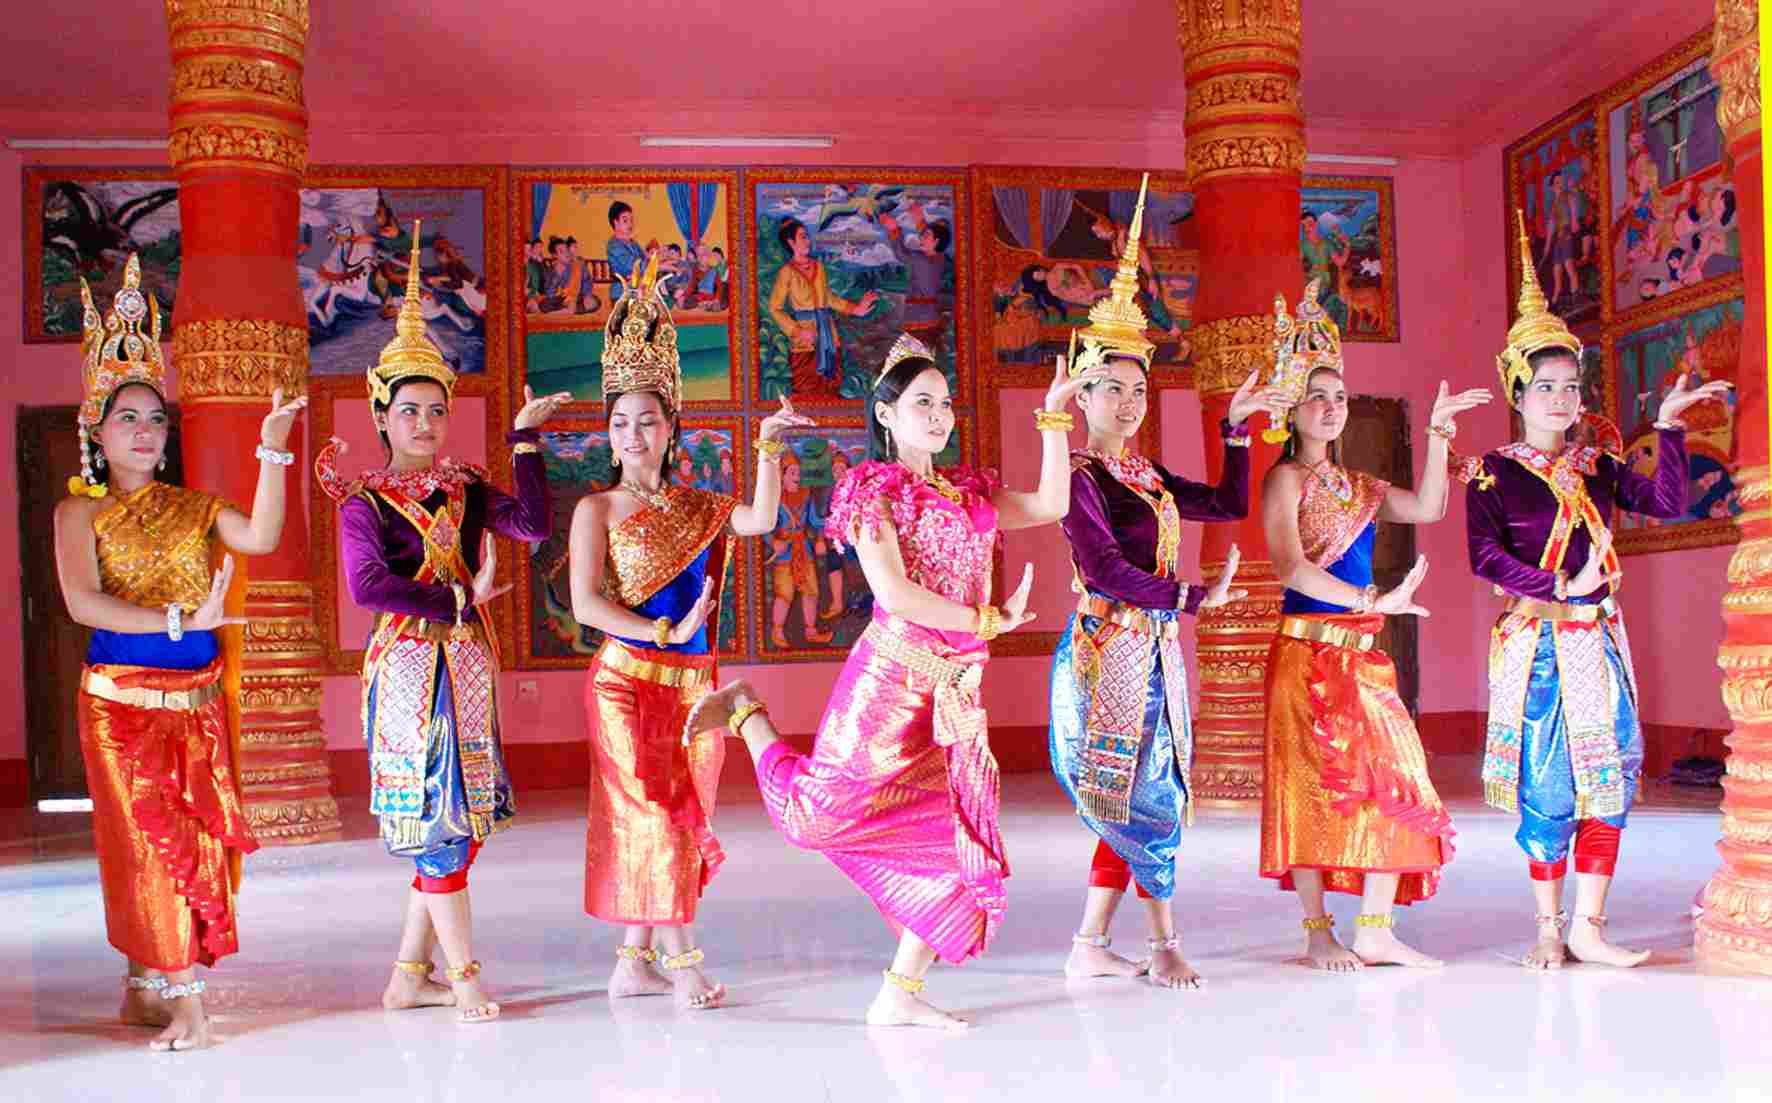 Hậu Giang gấp rút chuẩn bị tổ chức Ngày hội văn hóa, thể thao và du lịch vùng đồng bào Khmer Nam Bộ lần thứ 6